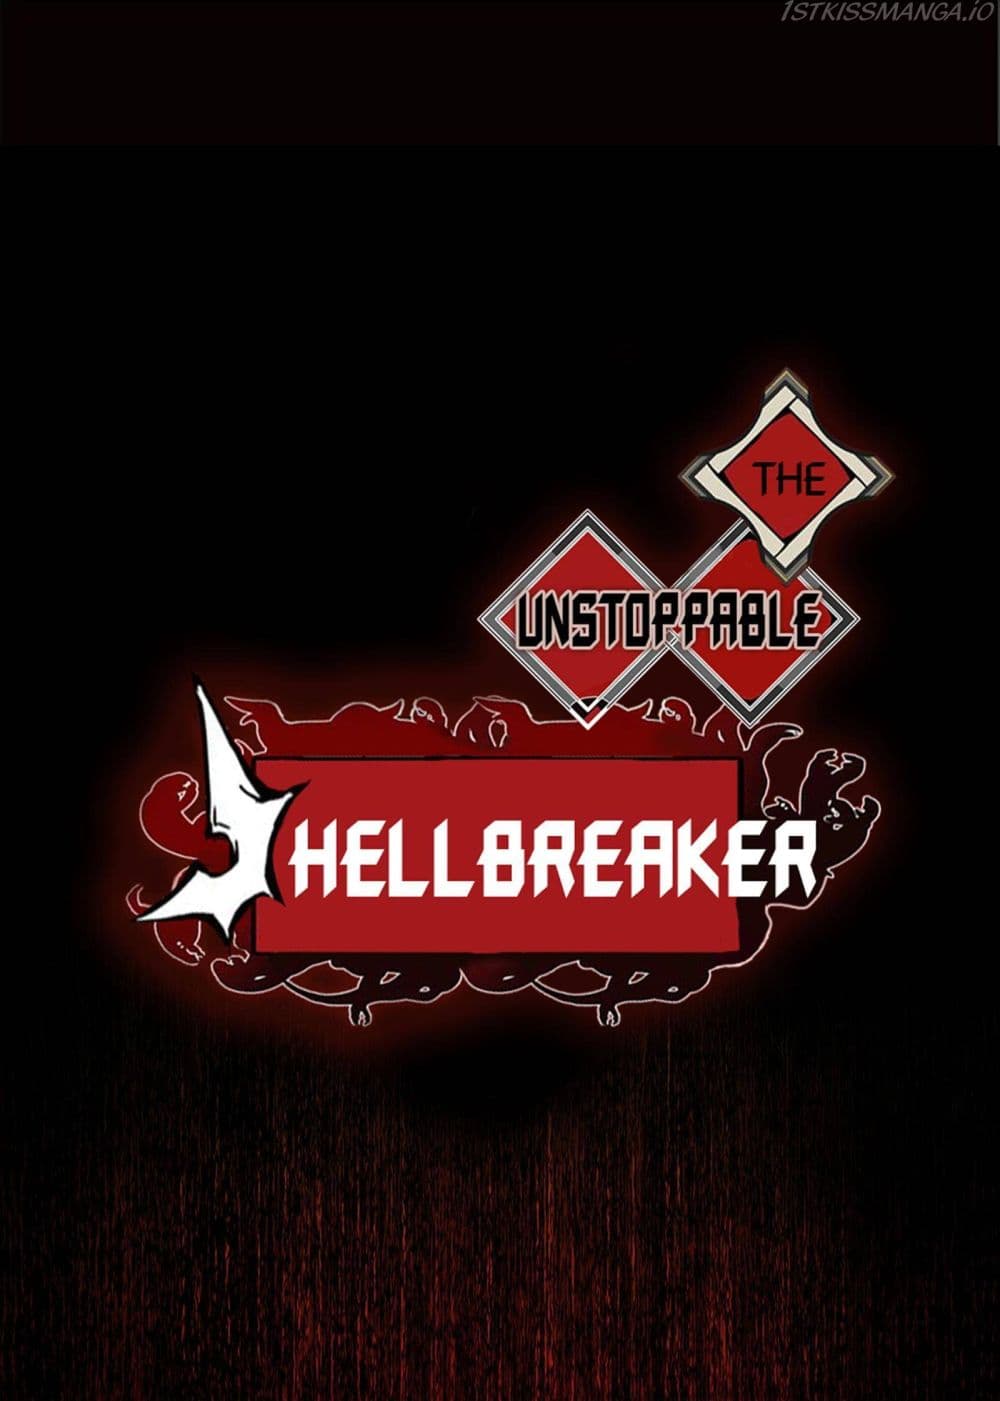 The Unstoppable Hellbreaker 23-23